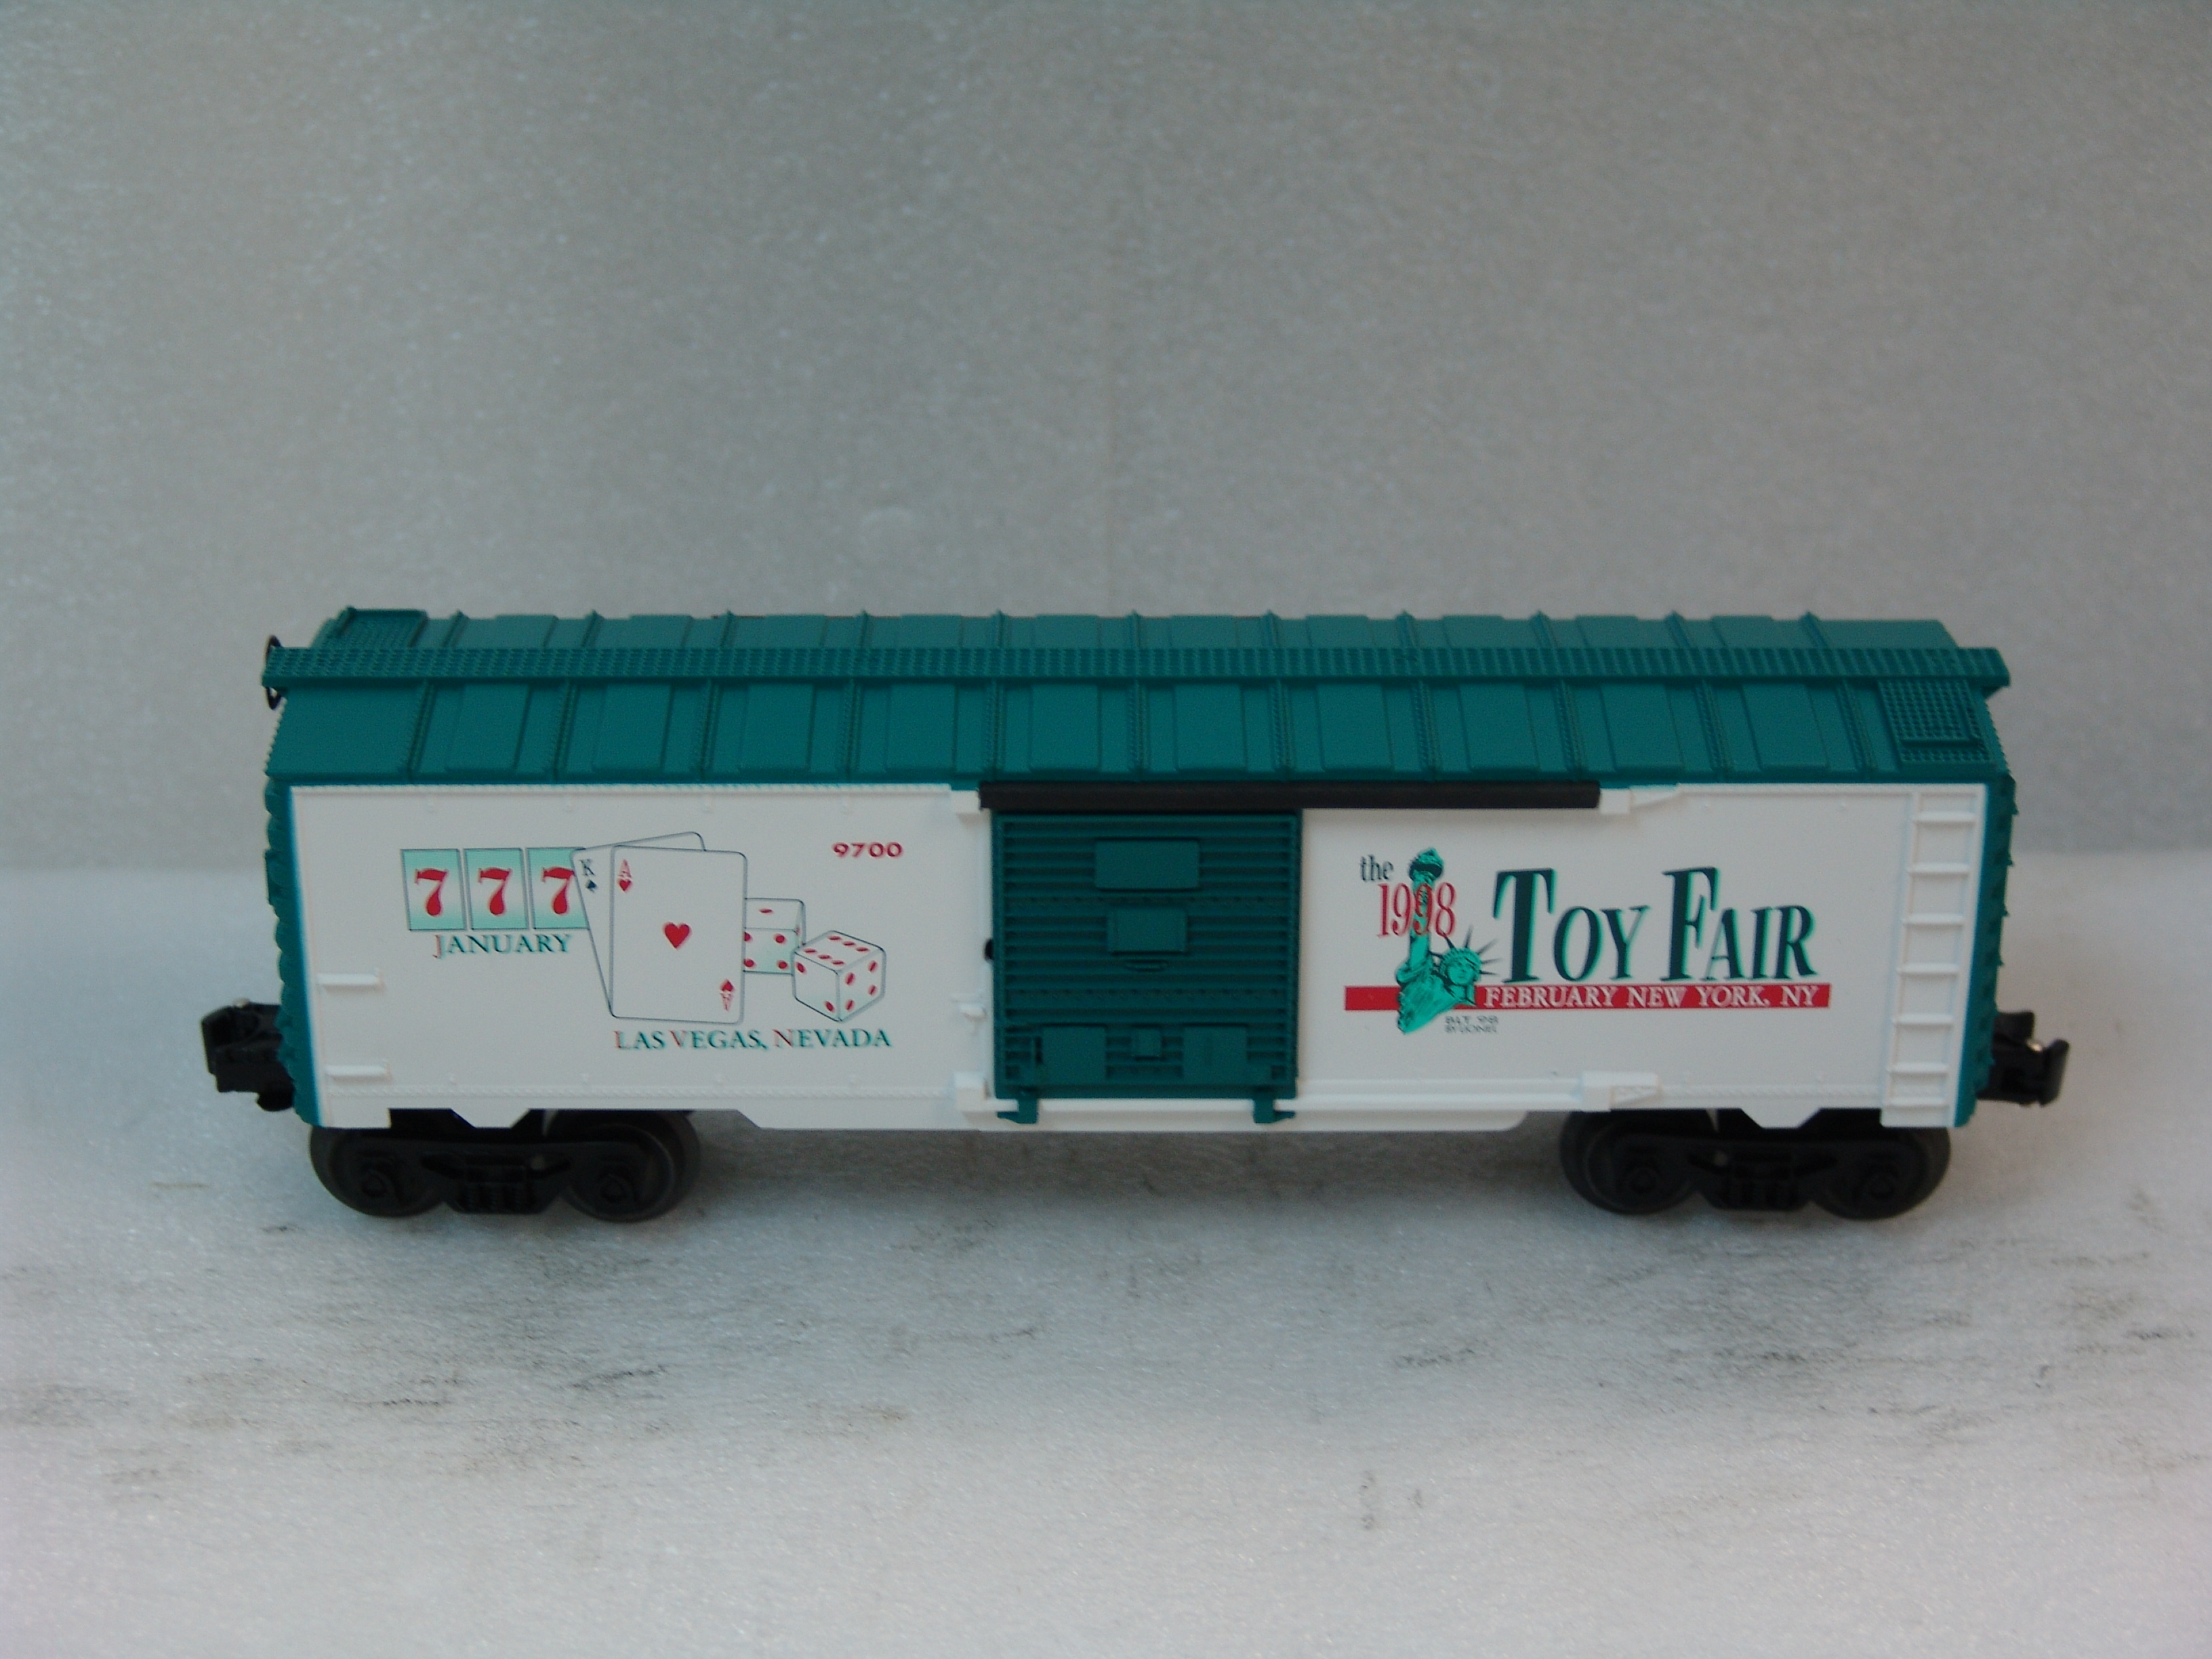 1998 Toy Fair boxcar